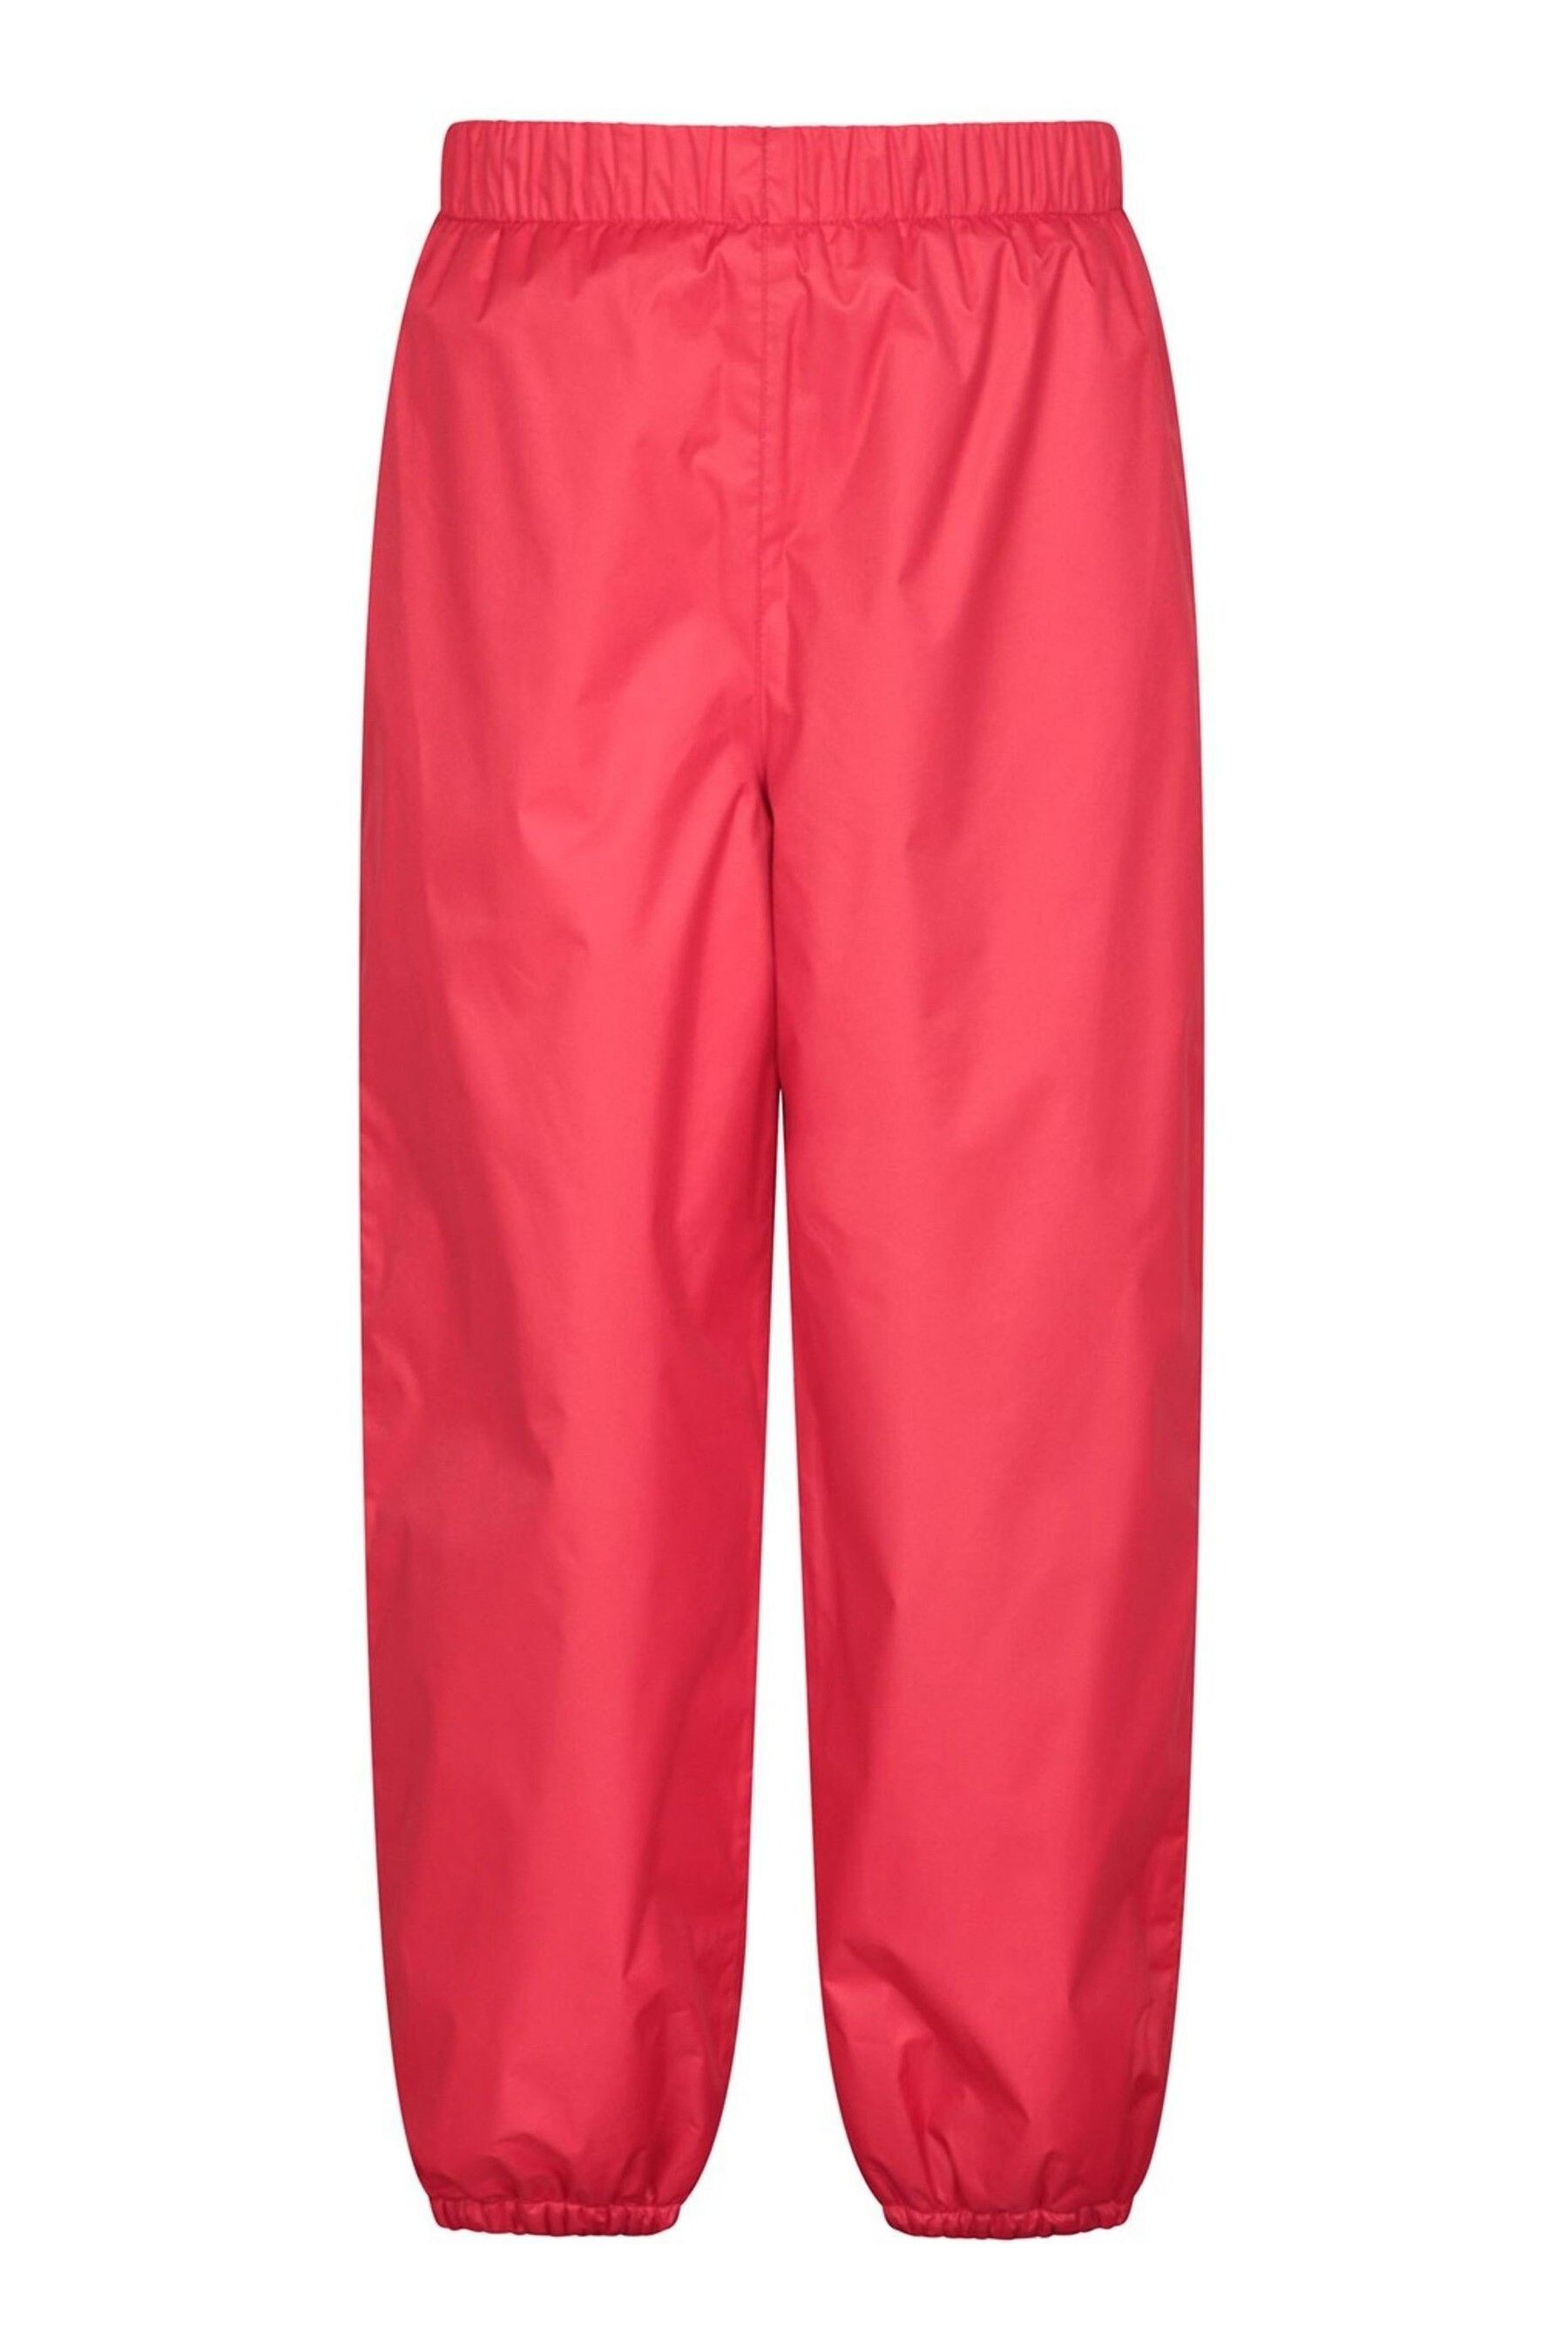 Непромокаемые детские брюки на флисовой подкладке Mountain Warehouse, красный